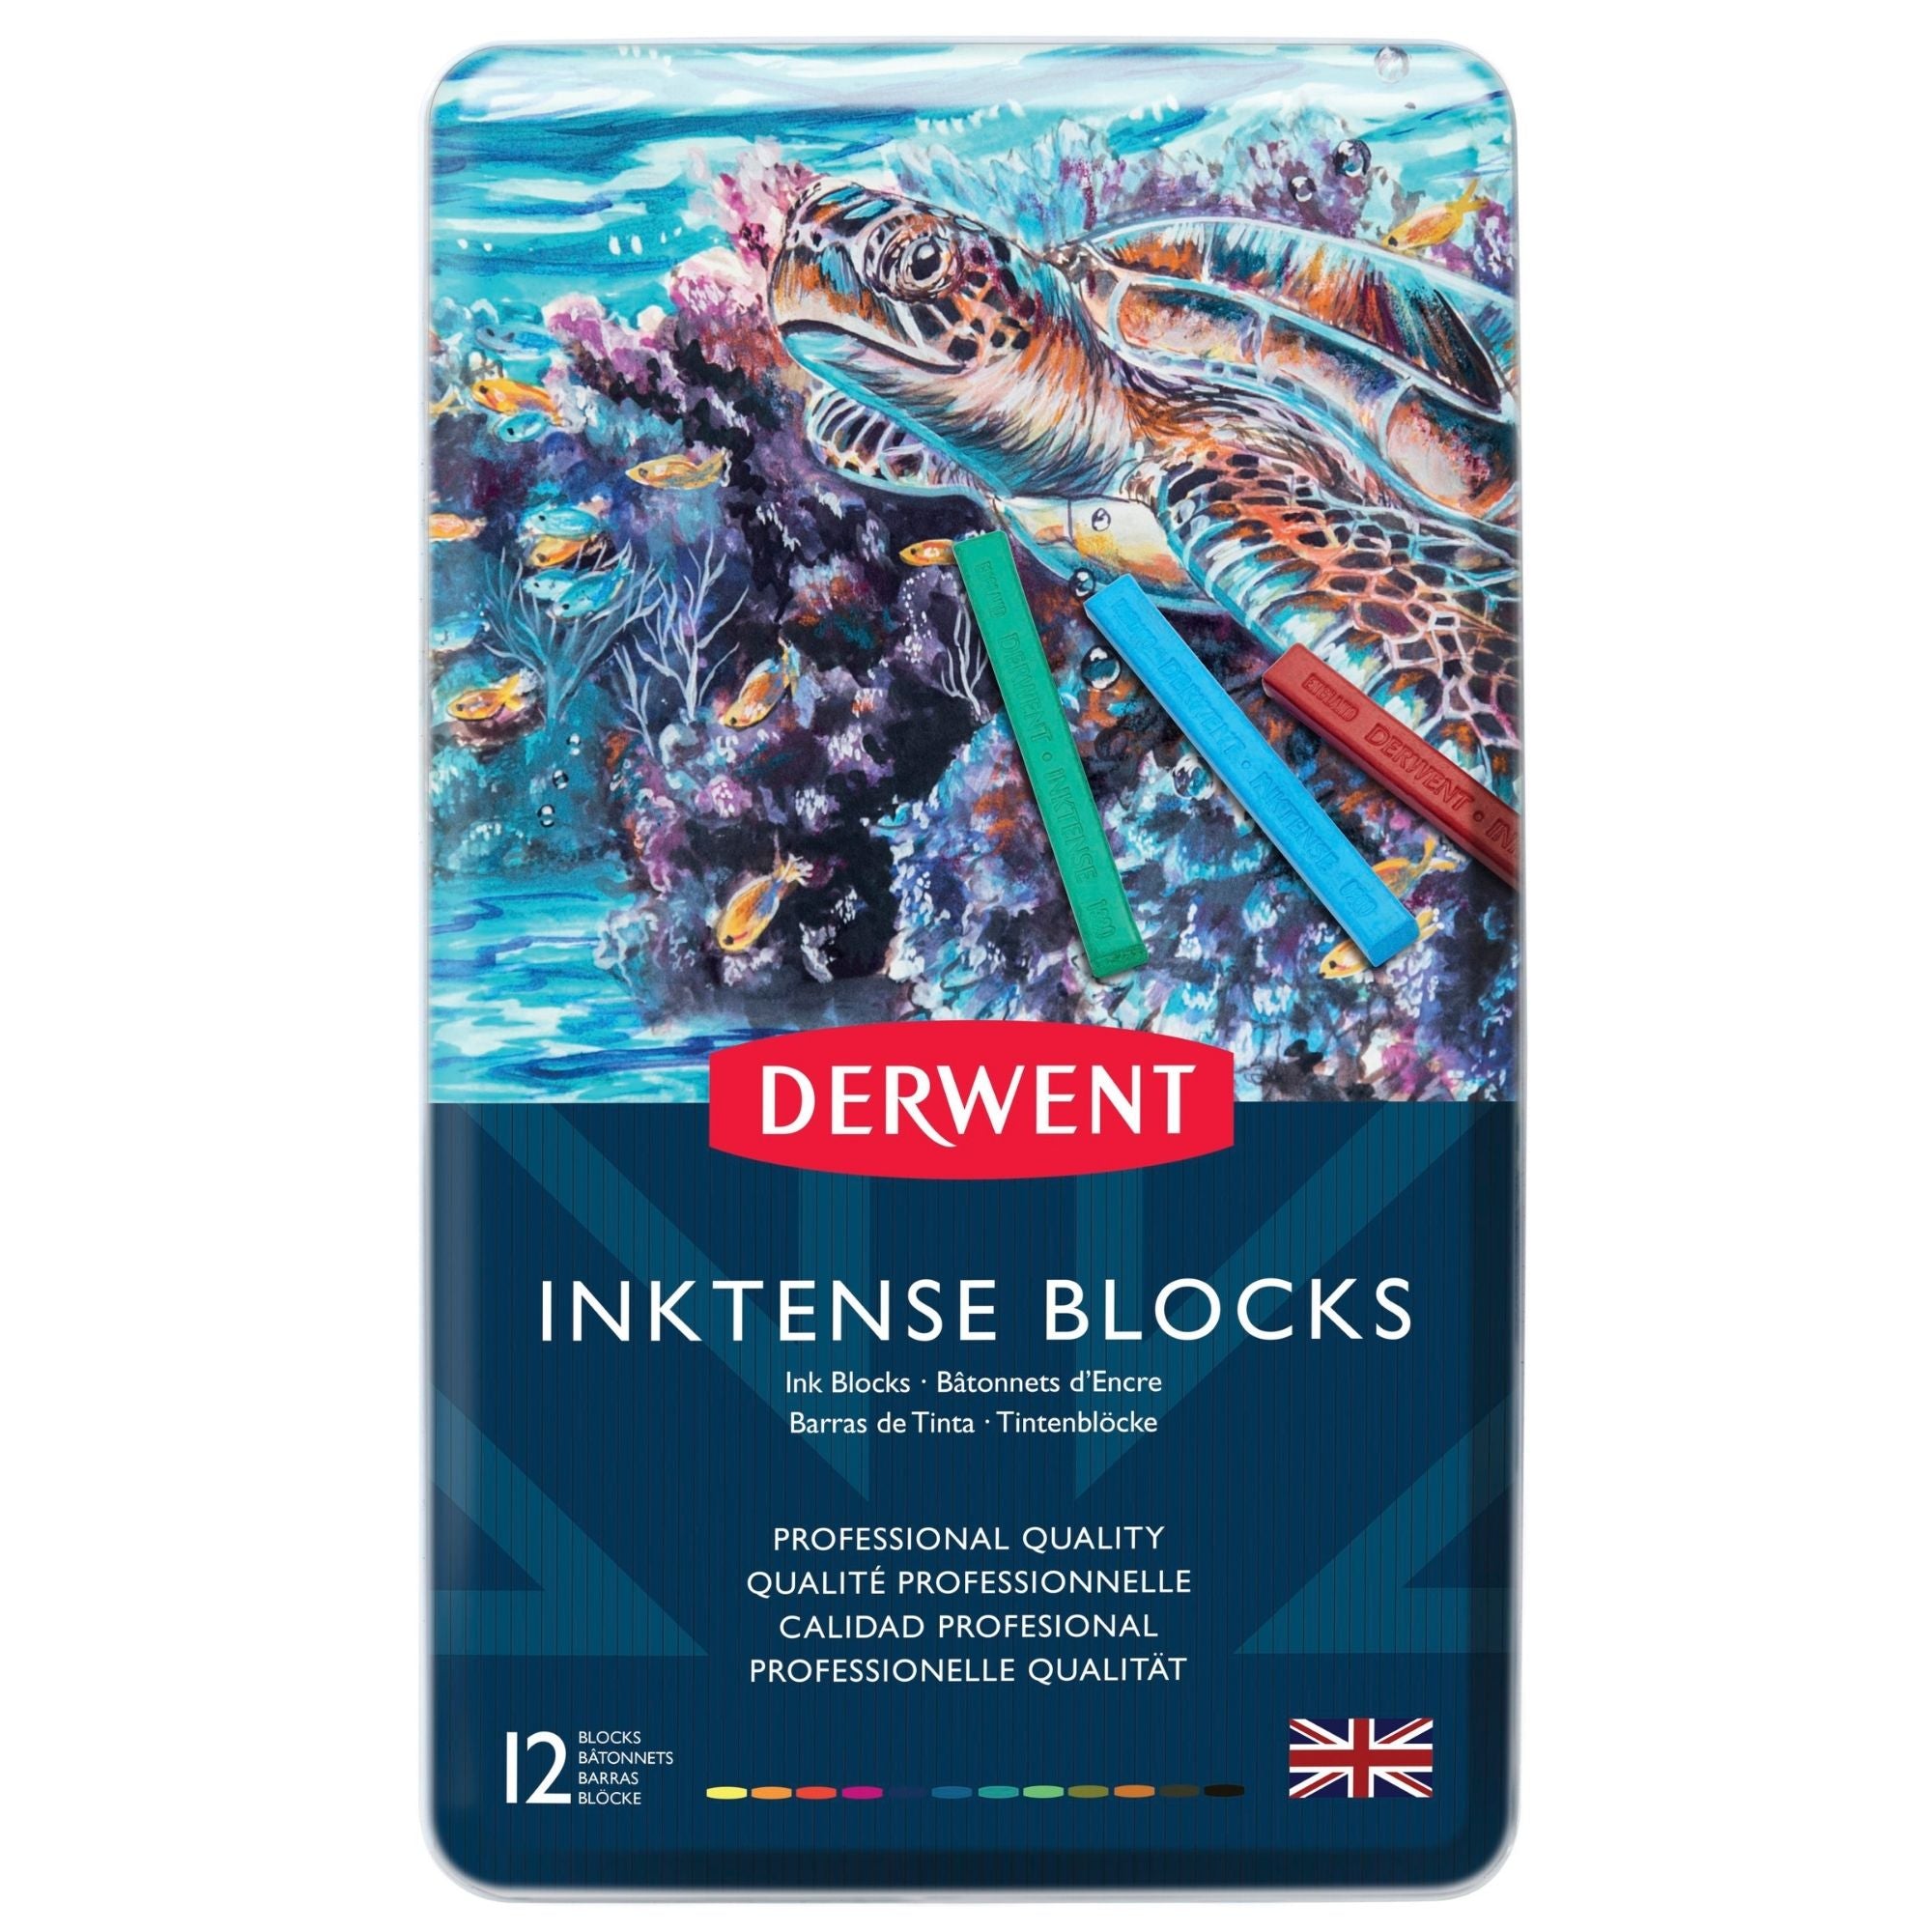 Derwent Inktense Blocks - Metal Tin Set of 12